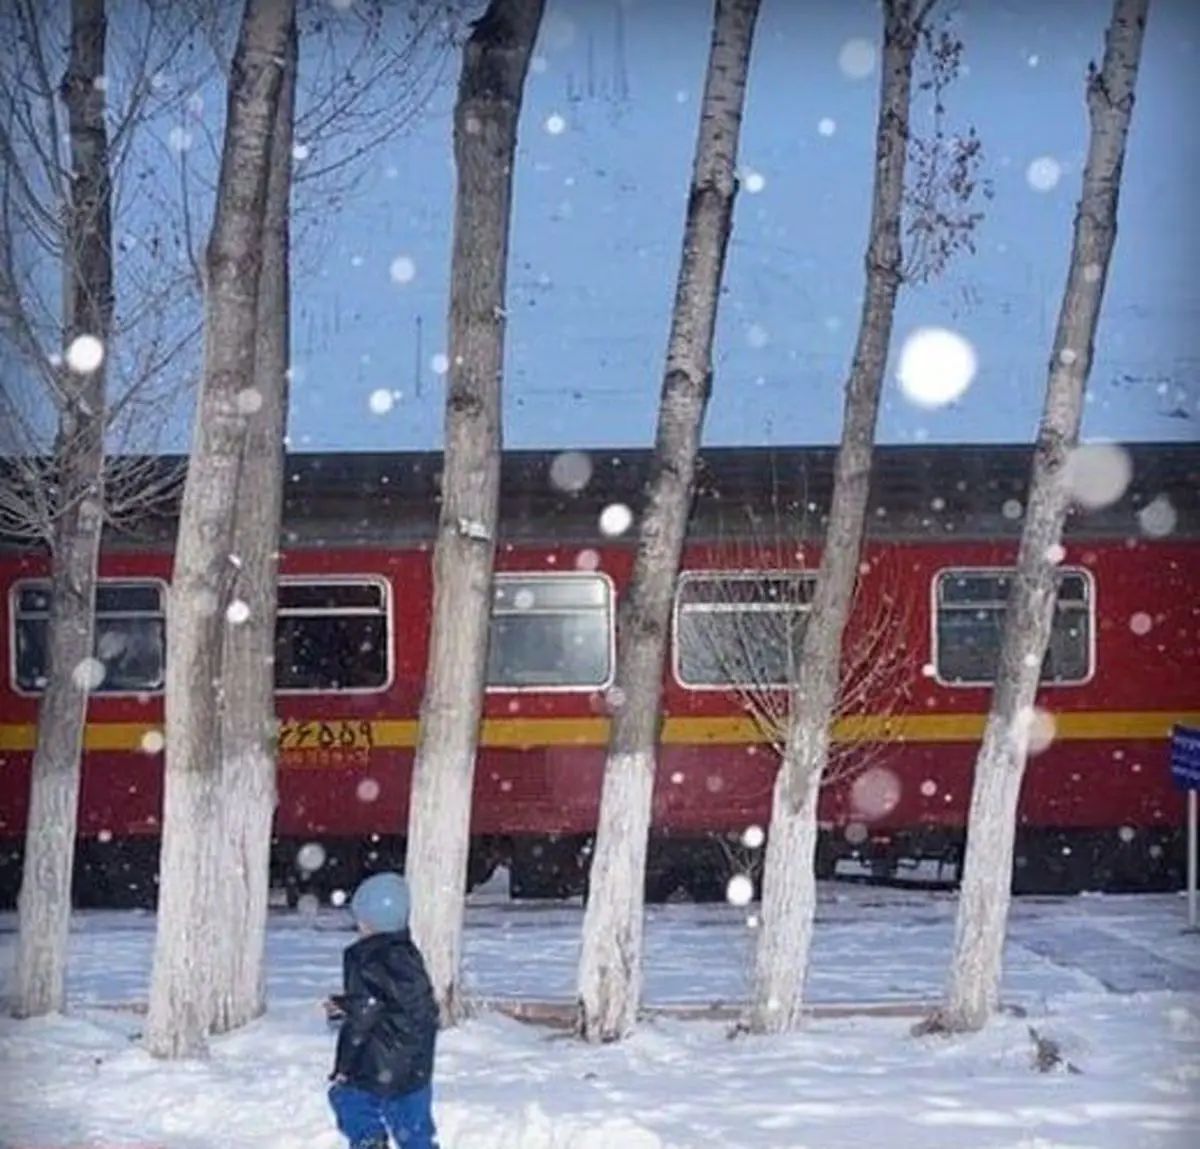 قطار تهران به شیراز با نقص فنی متوقف شد | 300 مسافر قطار شیراز در محاصره برف |  امدادرسانی آغاز شد